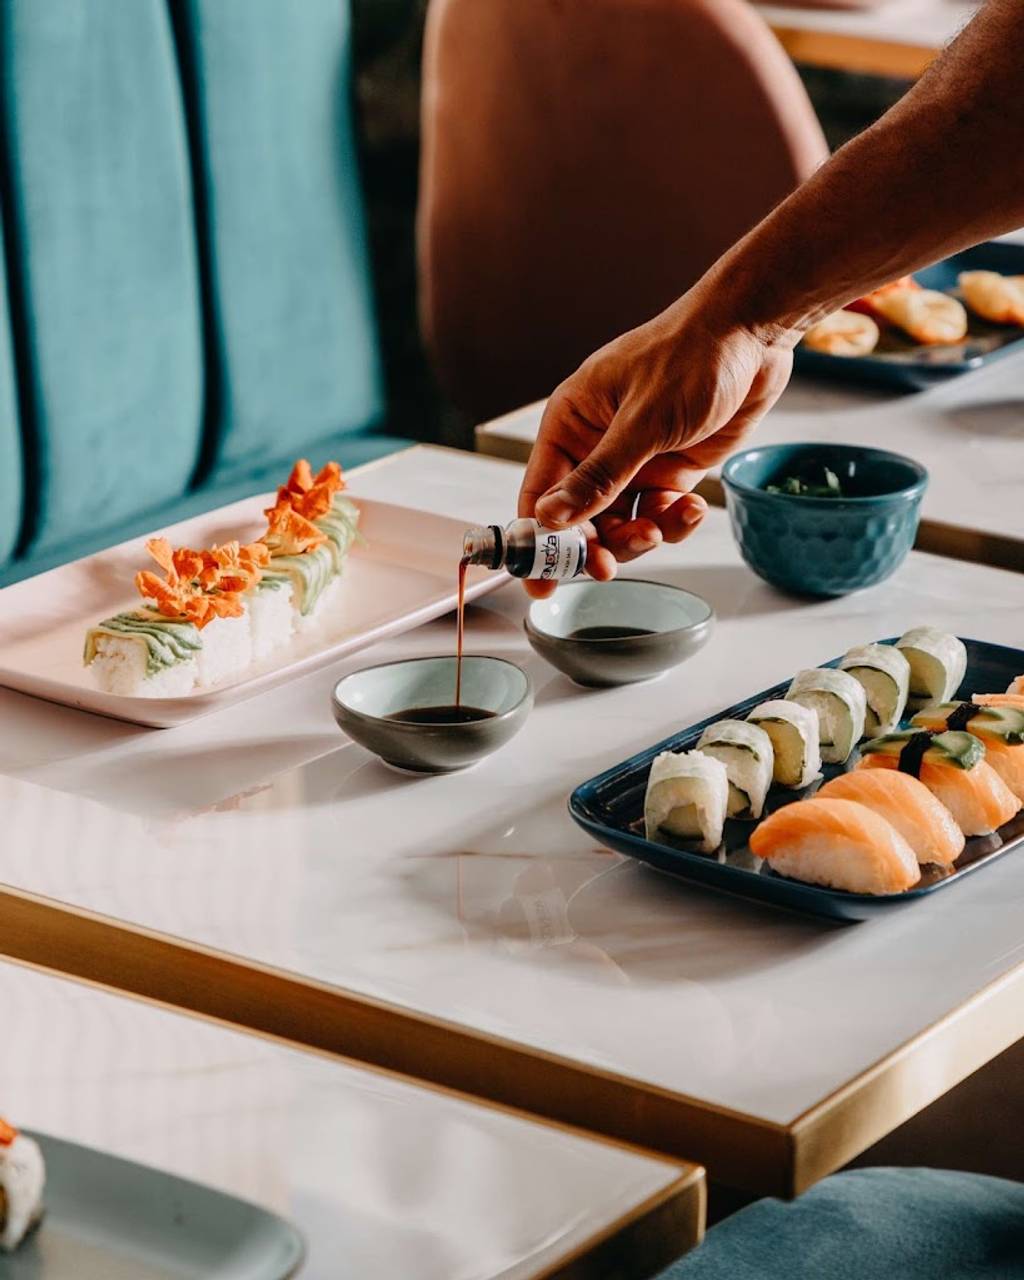 Konowa Sushi & Wok | Restaurant japonais sur place ou à emporter Noisy-le-Sec - Food Tableware Dishware Table Ingredient